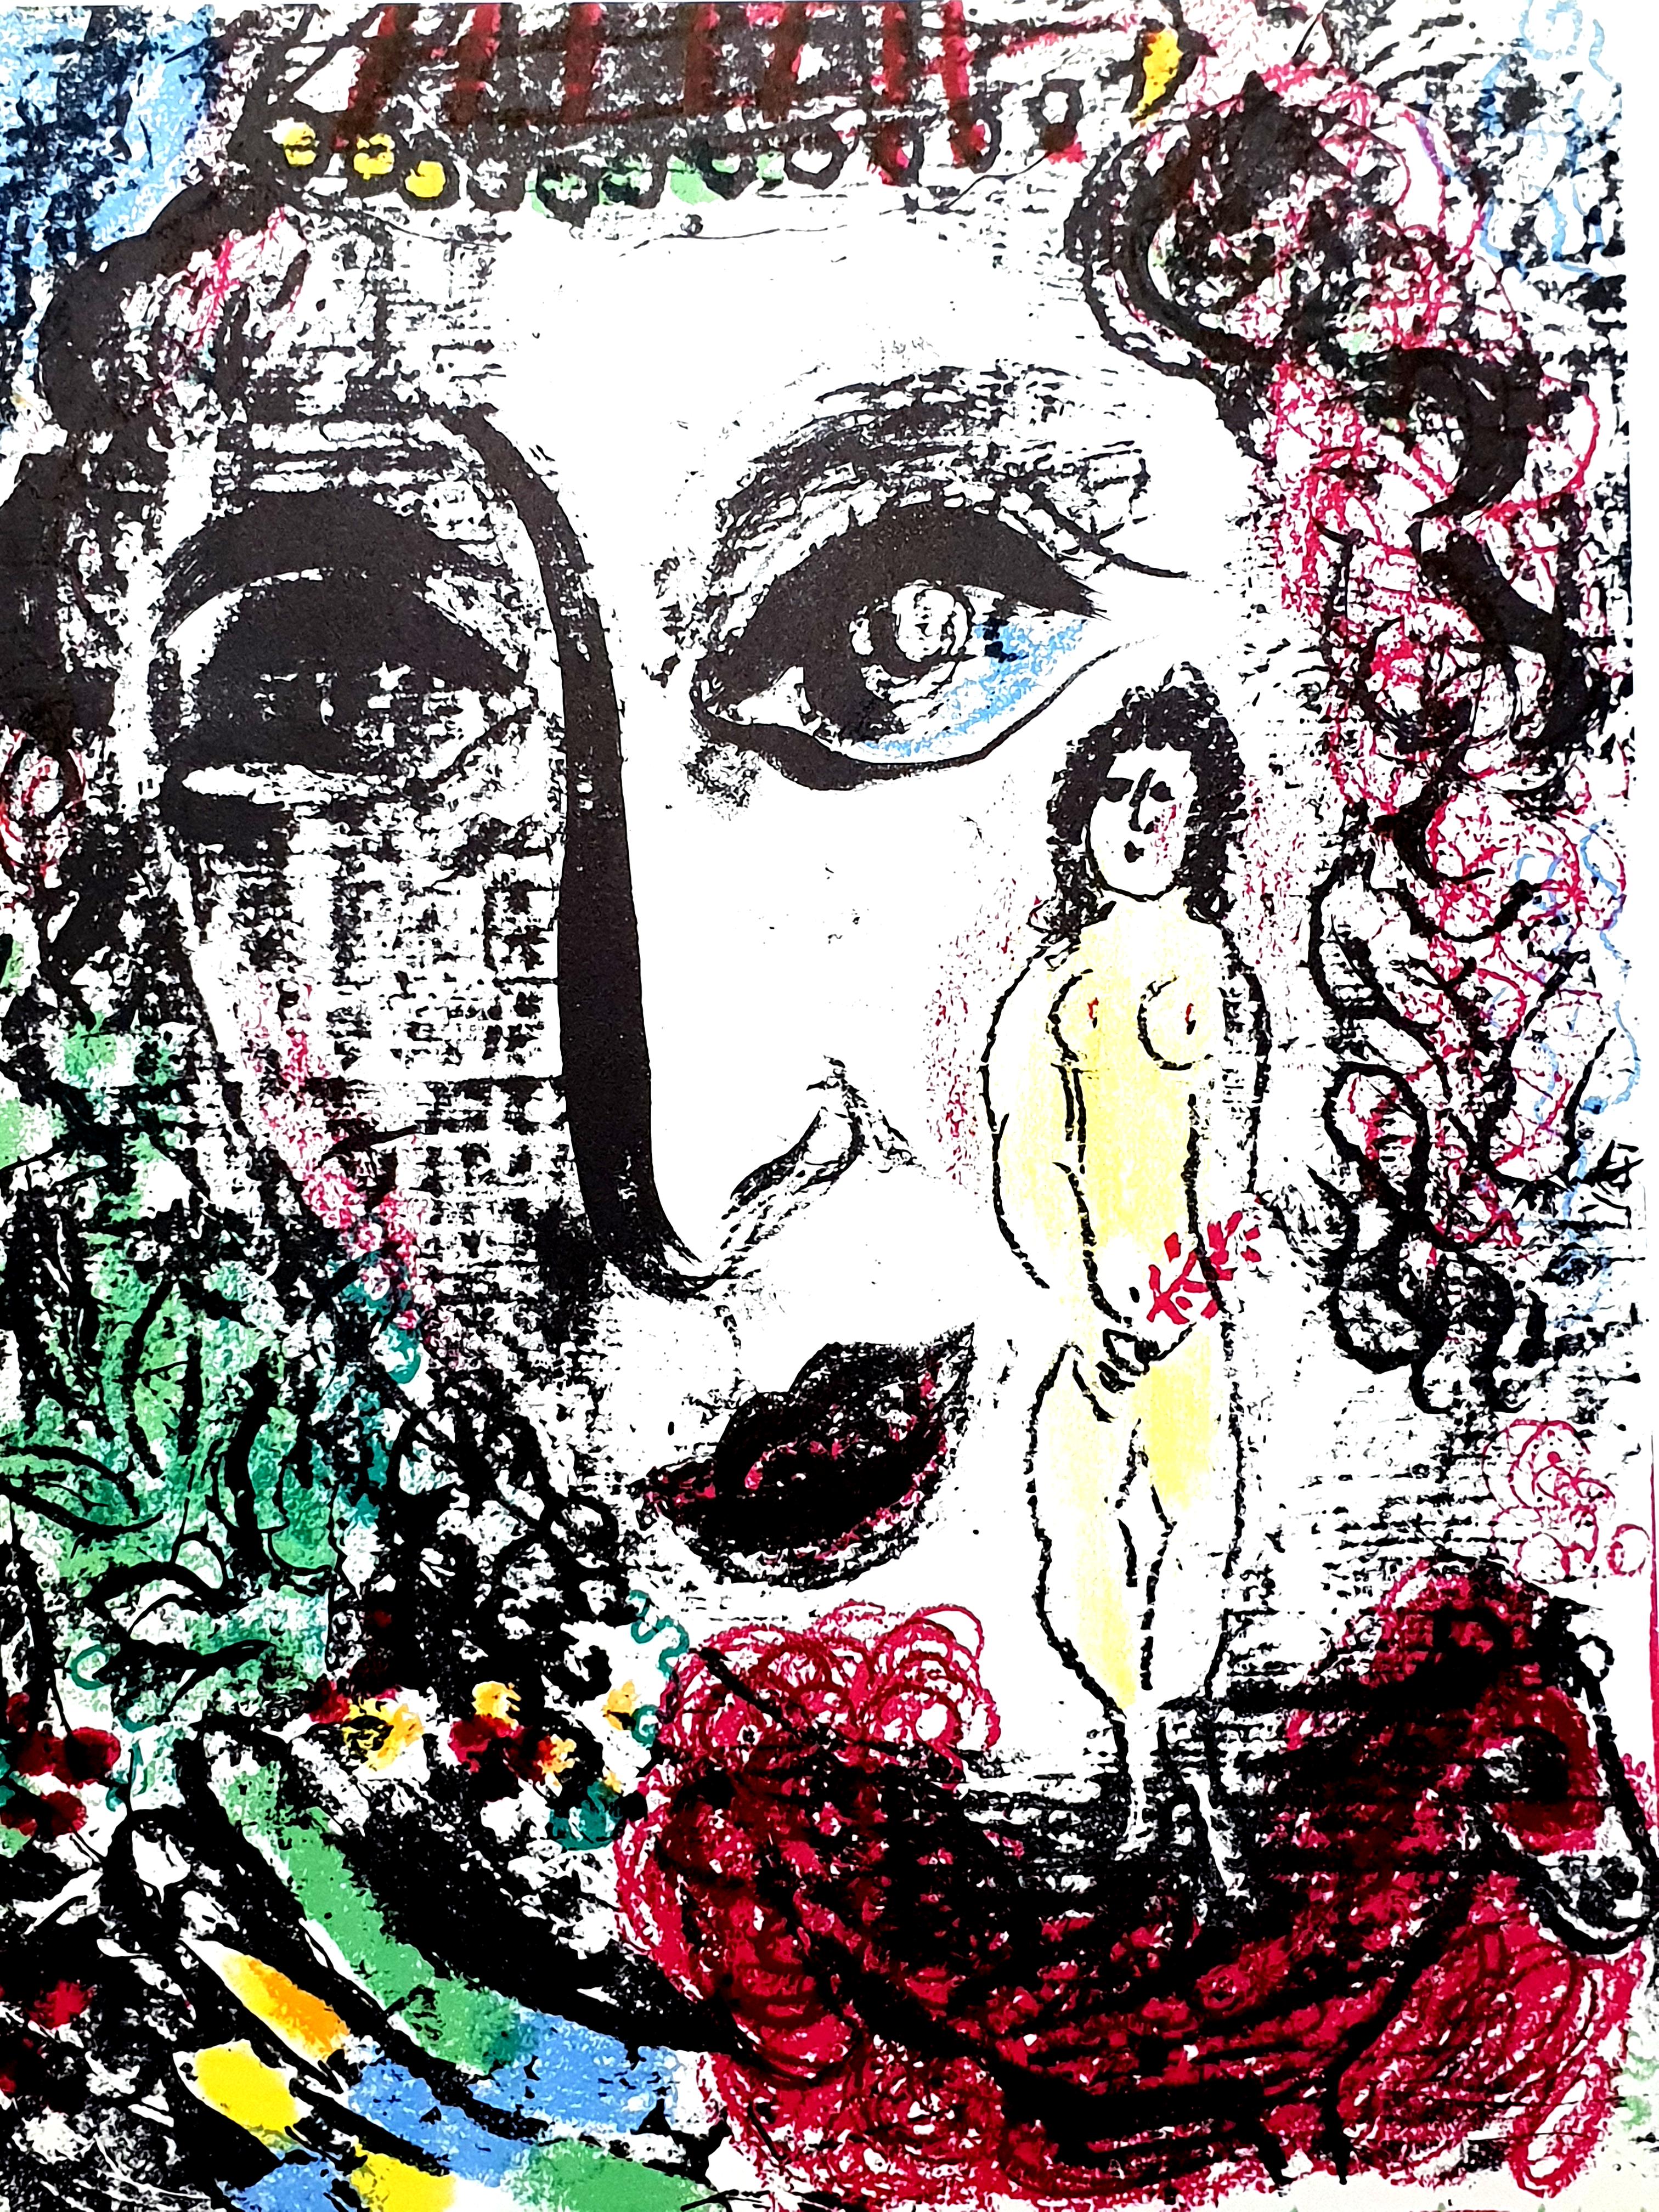 Marc Chagall
Lithographie originale
1963
Dimensions : 32 x 24 cm
Référence : Chagall Lithographe 1957-1962. VOLUME II.
Condition : Excellent

Marc Chagall  (né en 1887)

Marc Chagall est né en Biélorussie en 1887 et s'est intéressé très tôt à l'art.